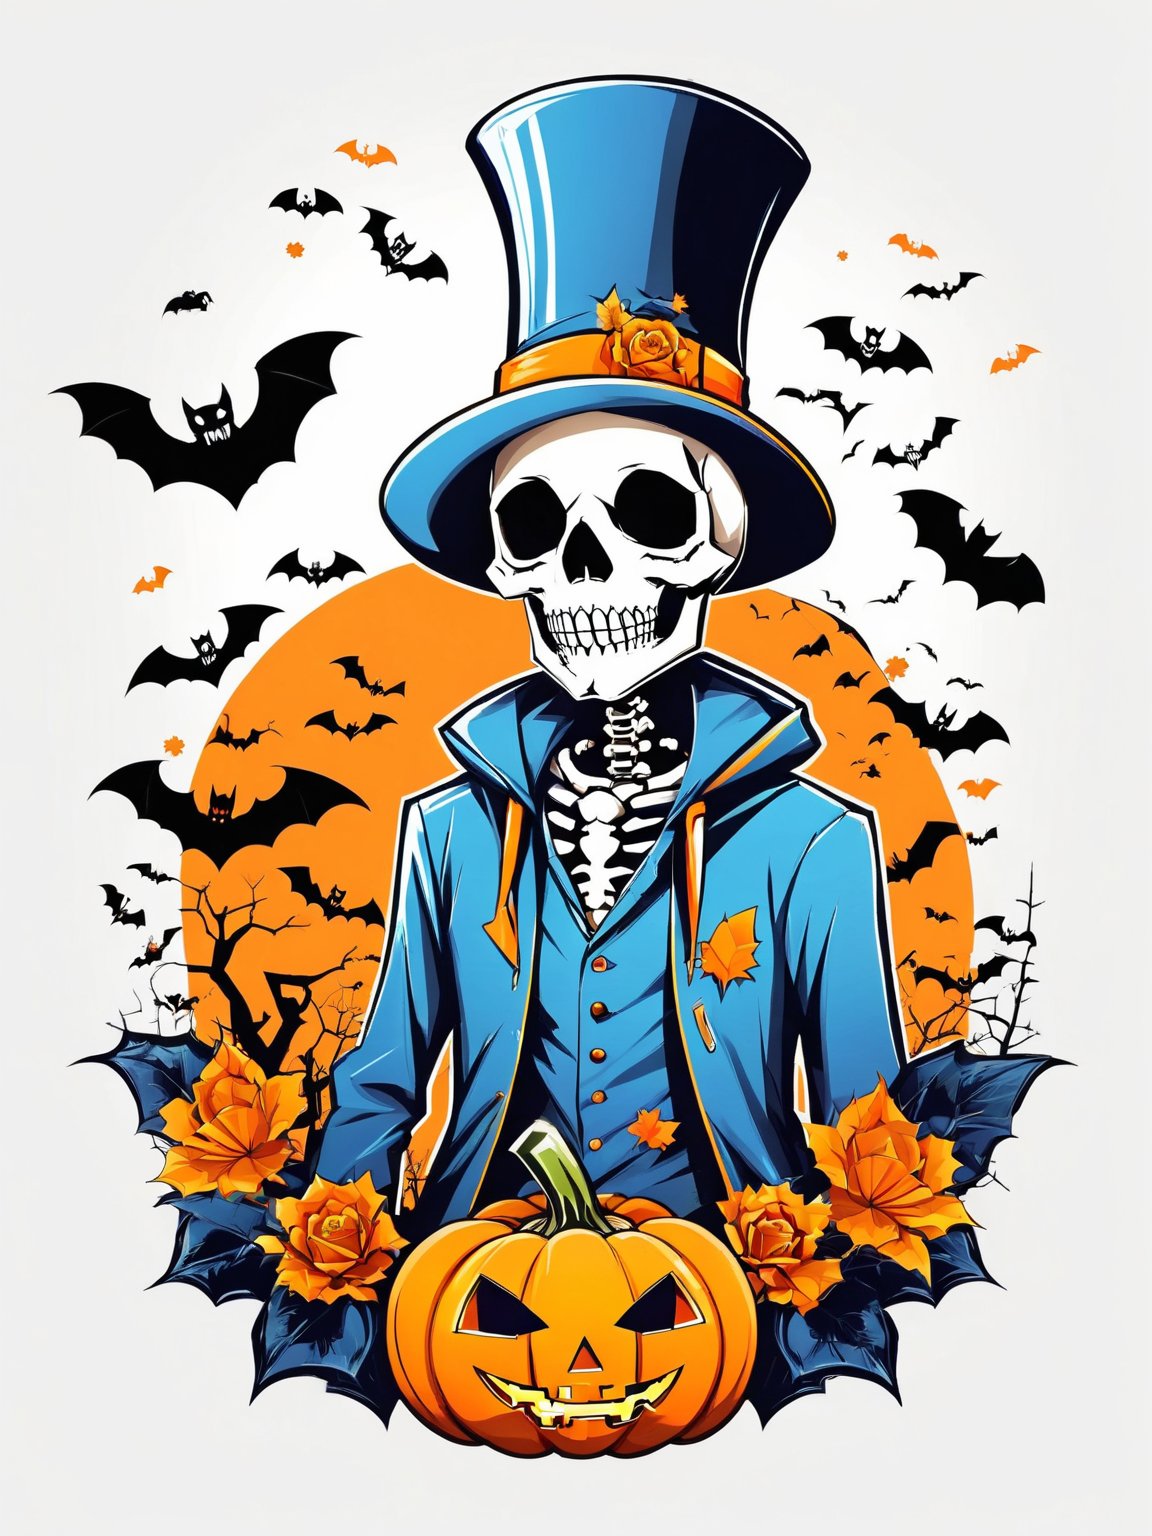 AiArtV,t-shirt design, 1boy,hat,jacket,upper body,flower,male focus,hood,blue jacket,halloween,top hat,hat flower,jack-o'-lantern,pumpkin,bat (animal),skeleton,white background,vector illustration